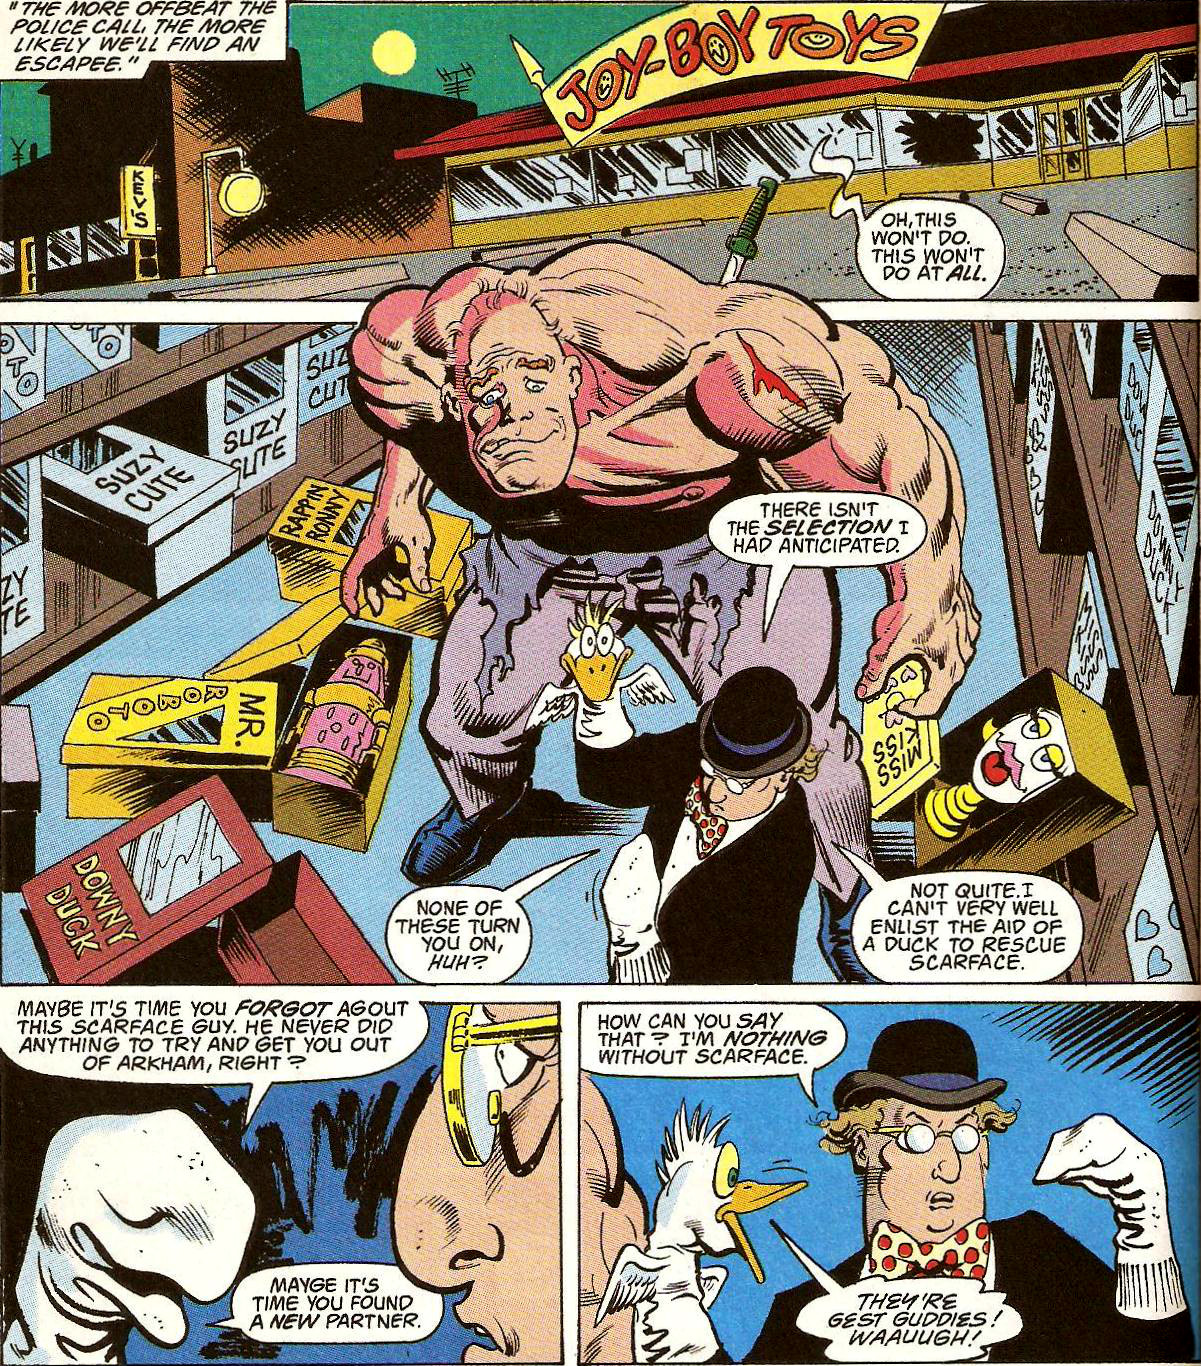 From Detective Comics (Vol. 1) #659 (1993)